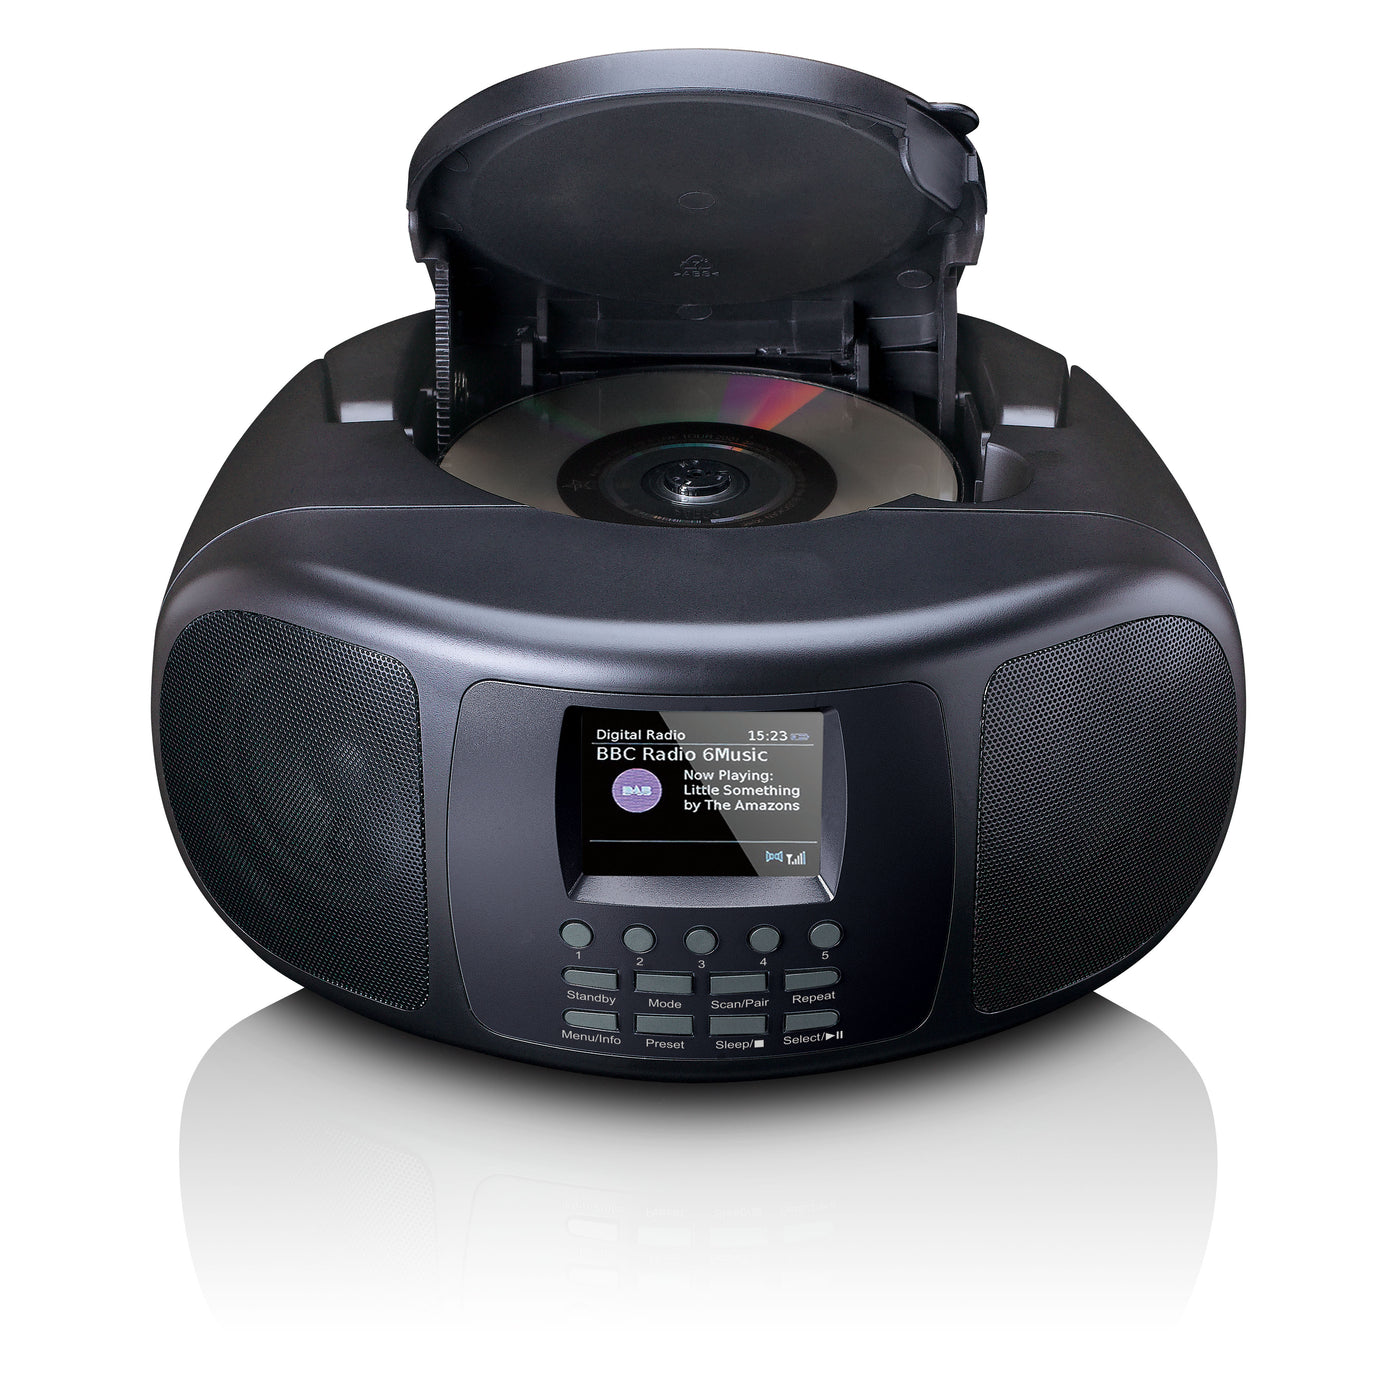 Lenco SCD-6000BK - Radio Internet portable avec DAB+/FM, Bluetooth®, lecteur CD et grand écran LCD couleur - Noir